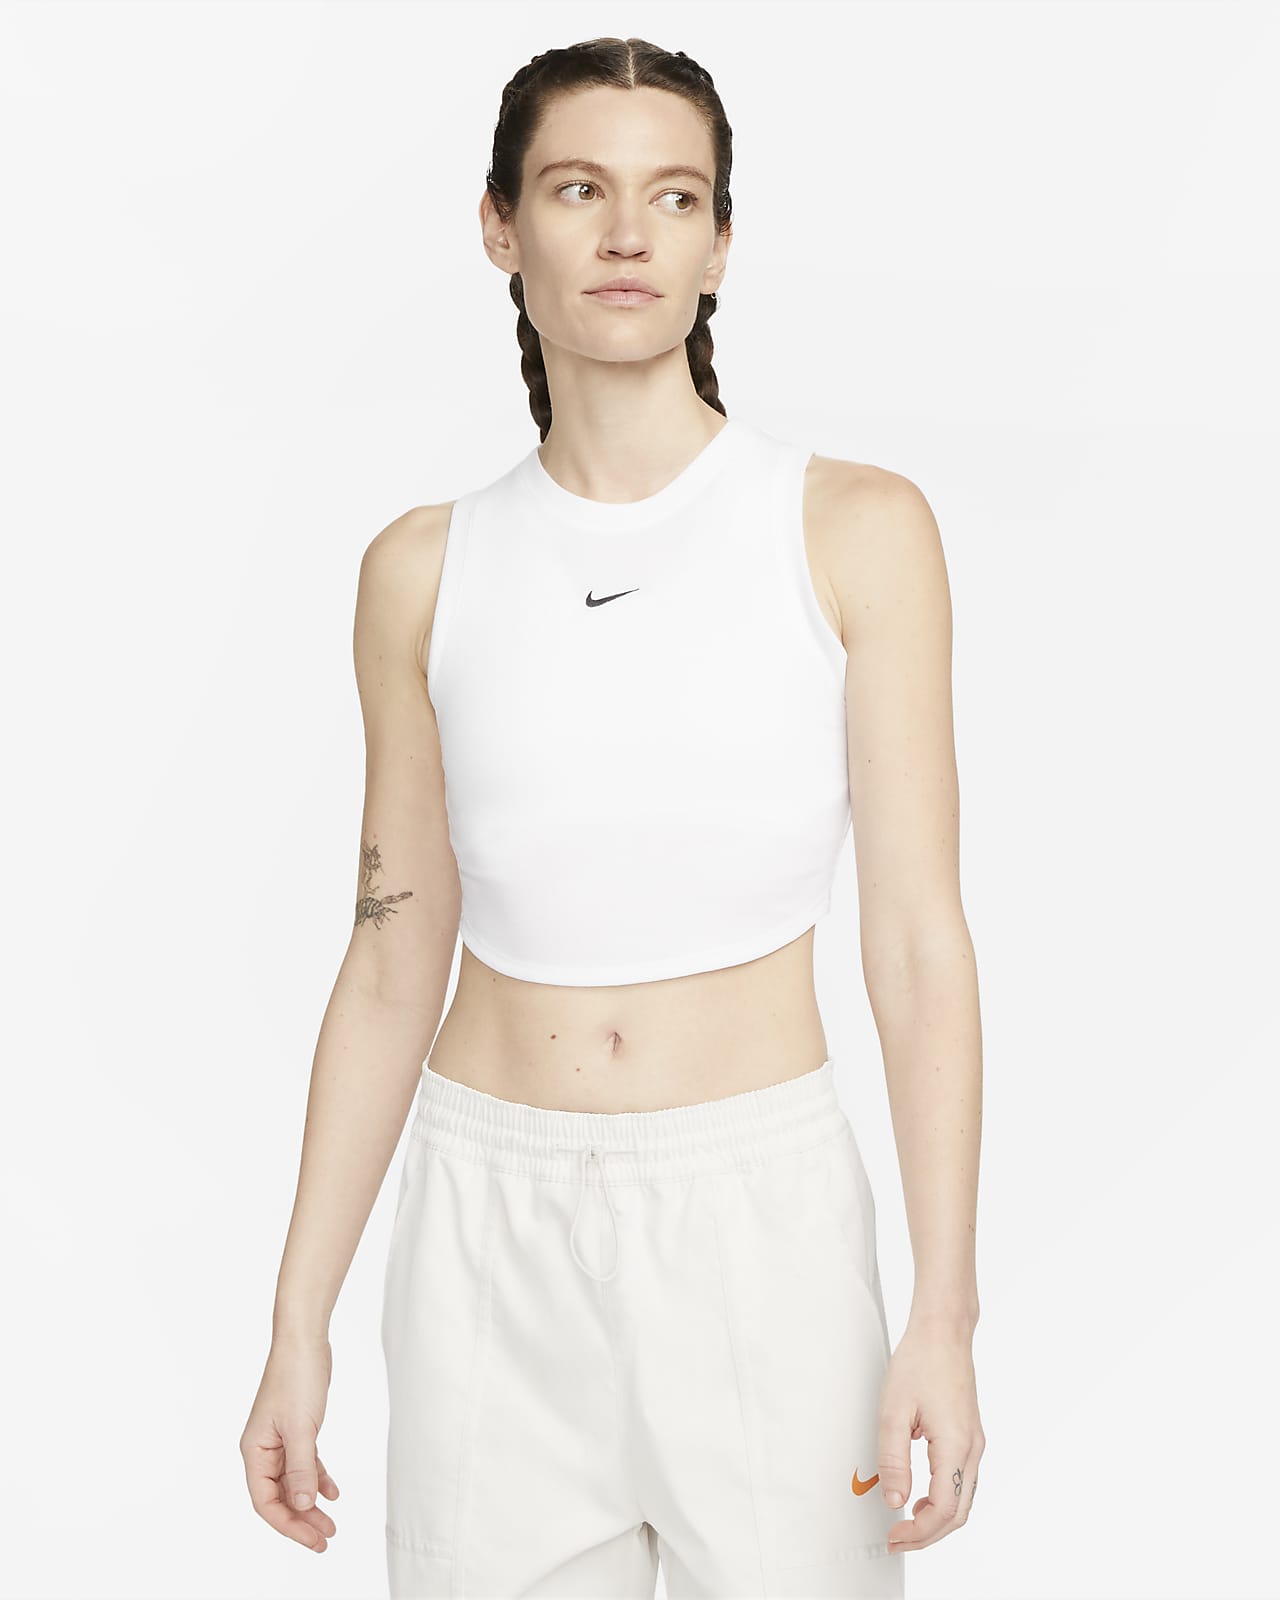 Nike Sportswear Chill Knit testhezálló, rövidített szabású, finoman bordázott női trikó